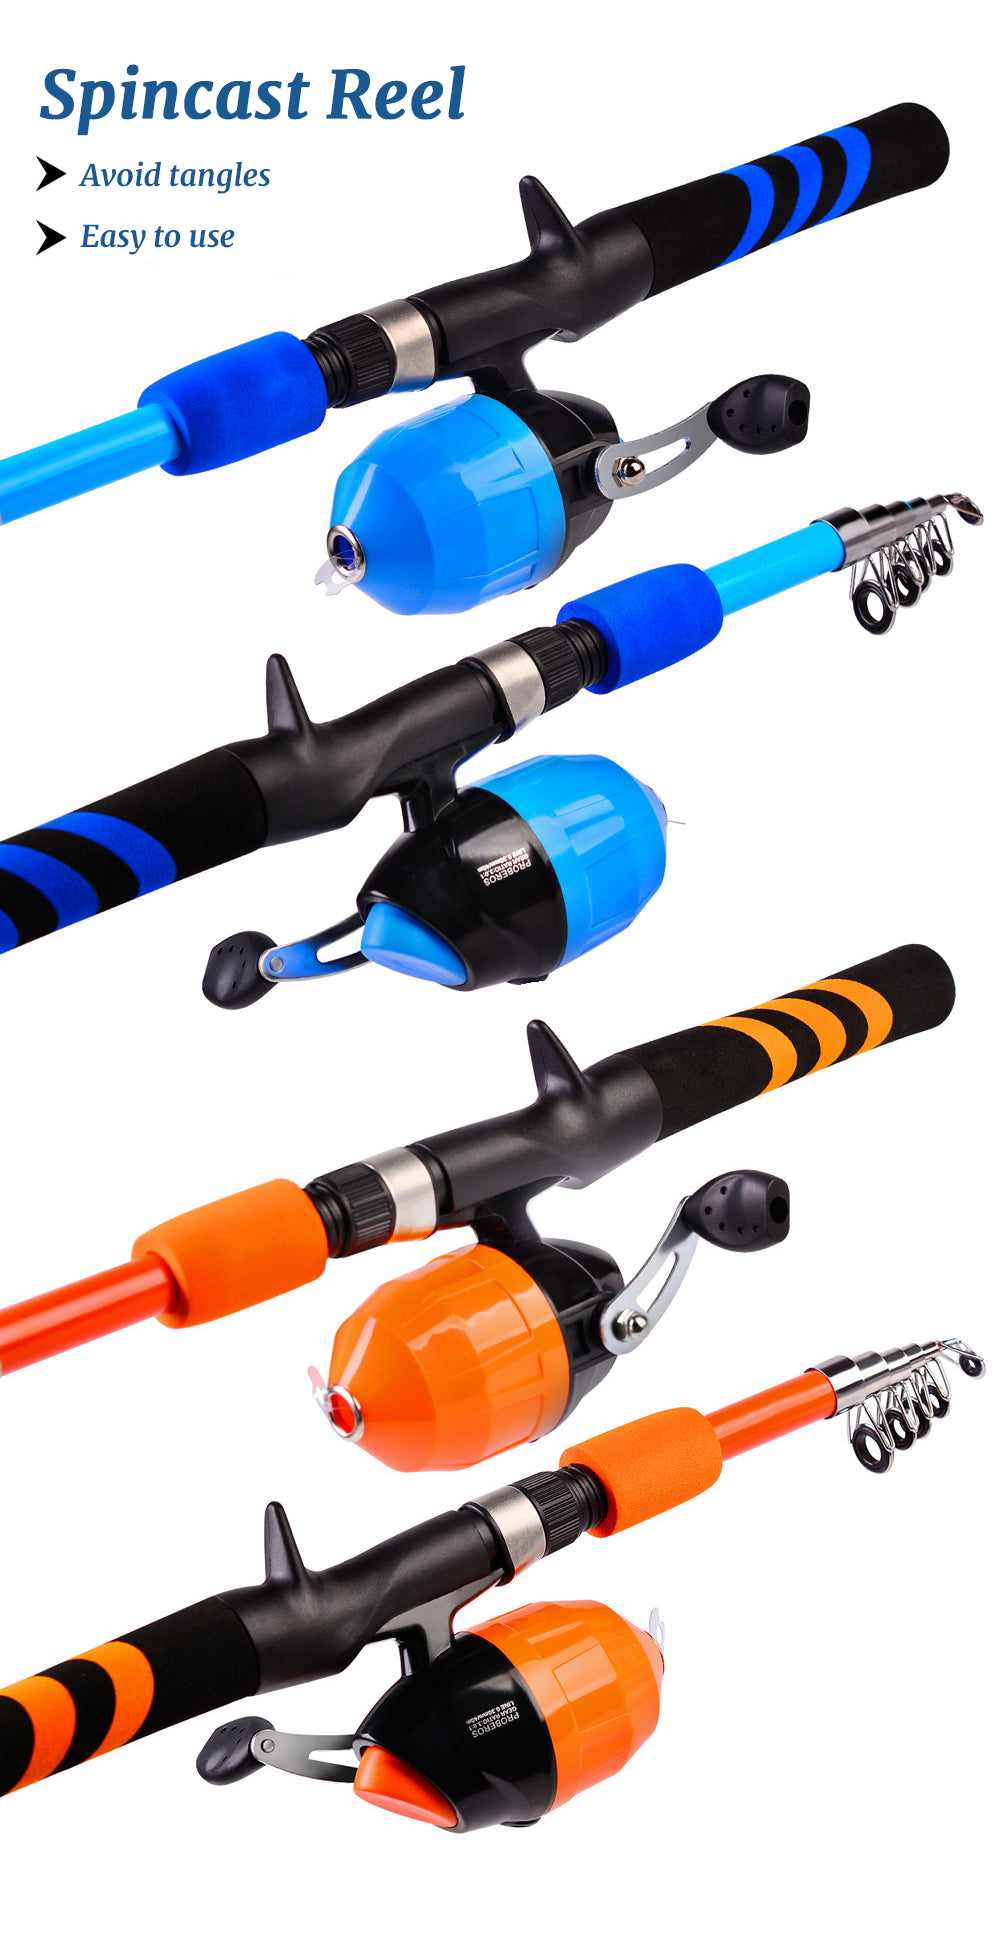 woegel hengelset – complete visset – vishengel + accessoires –  hengel van 1.75 meter inschuifbaar – voor beginners en gevorderden – oranje